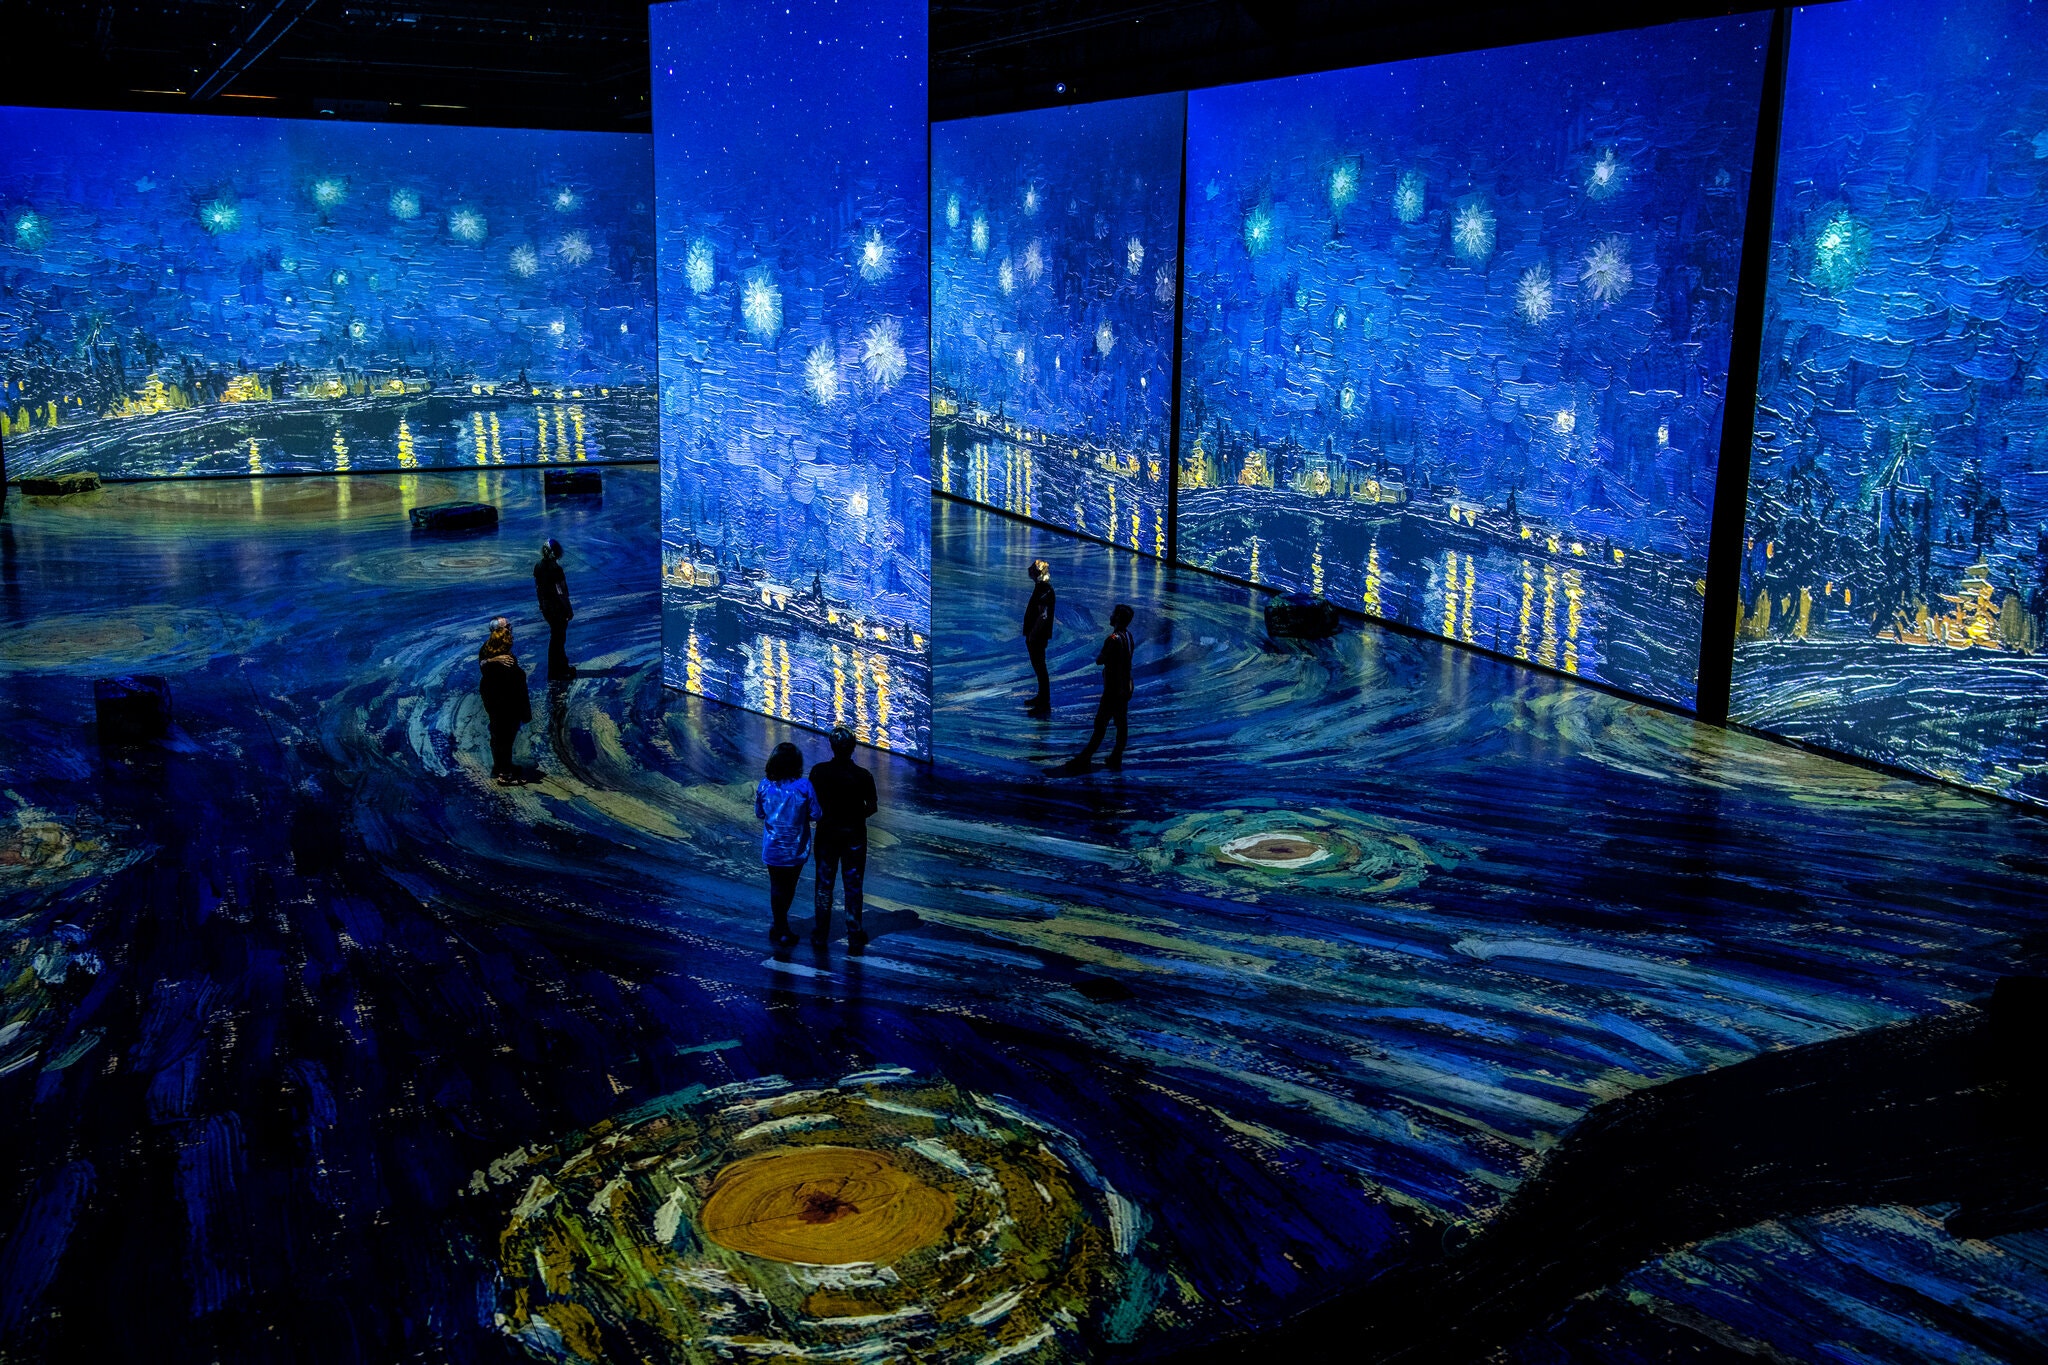 "Van Gogh Exhibition The Immersive Experience", la sorprendente